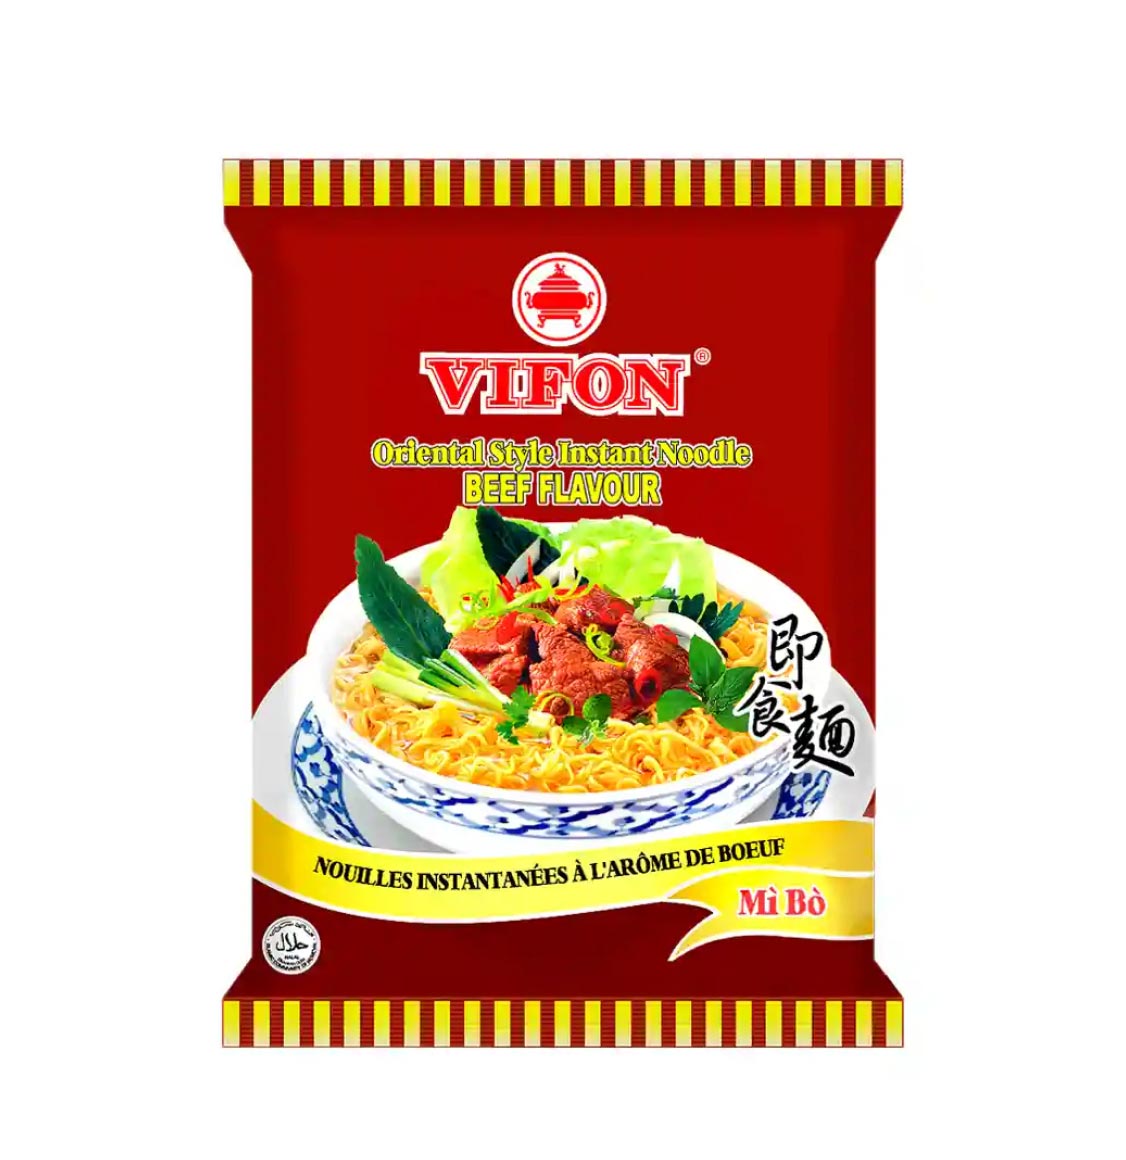 Vifon Oriental Style Instant Noodle Beef Flavour 70g